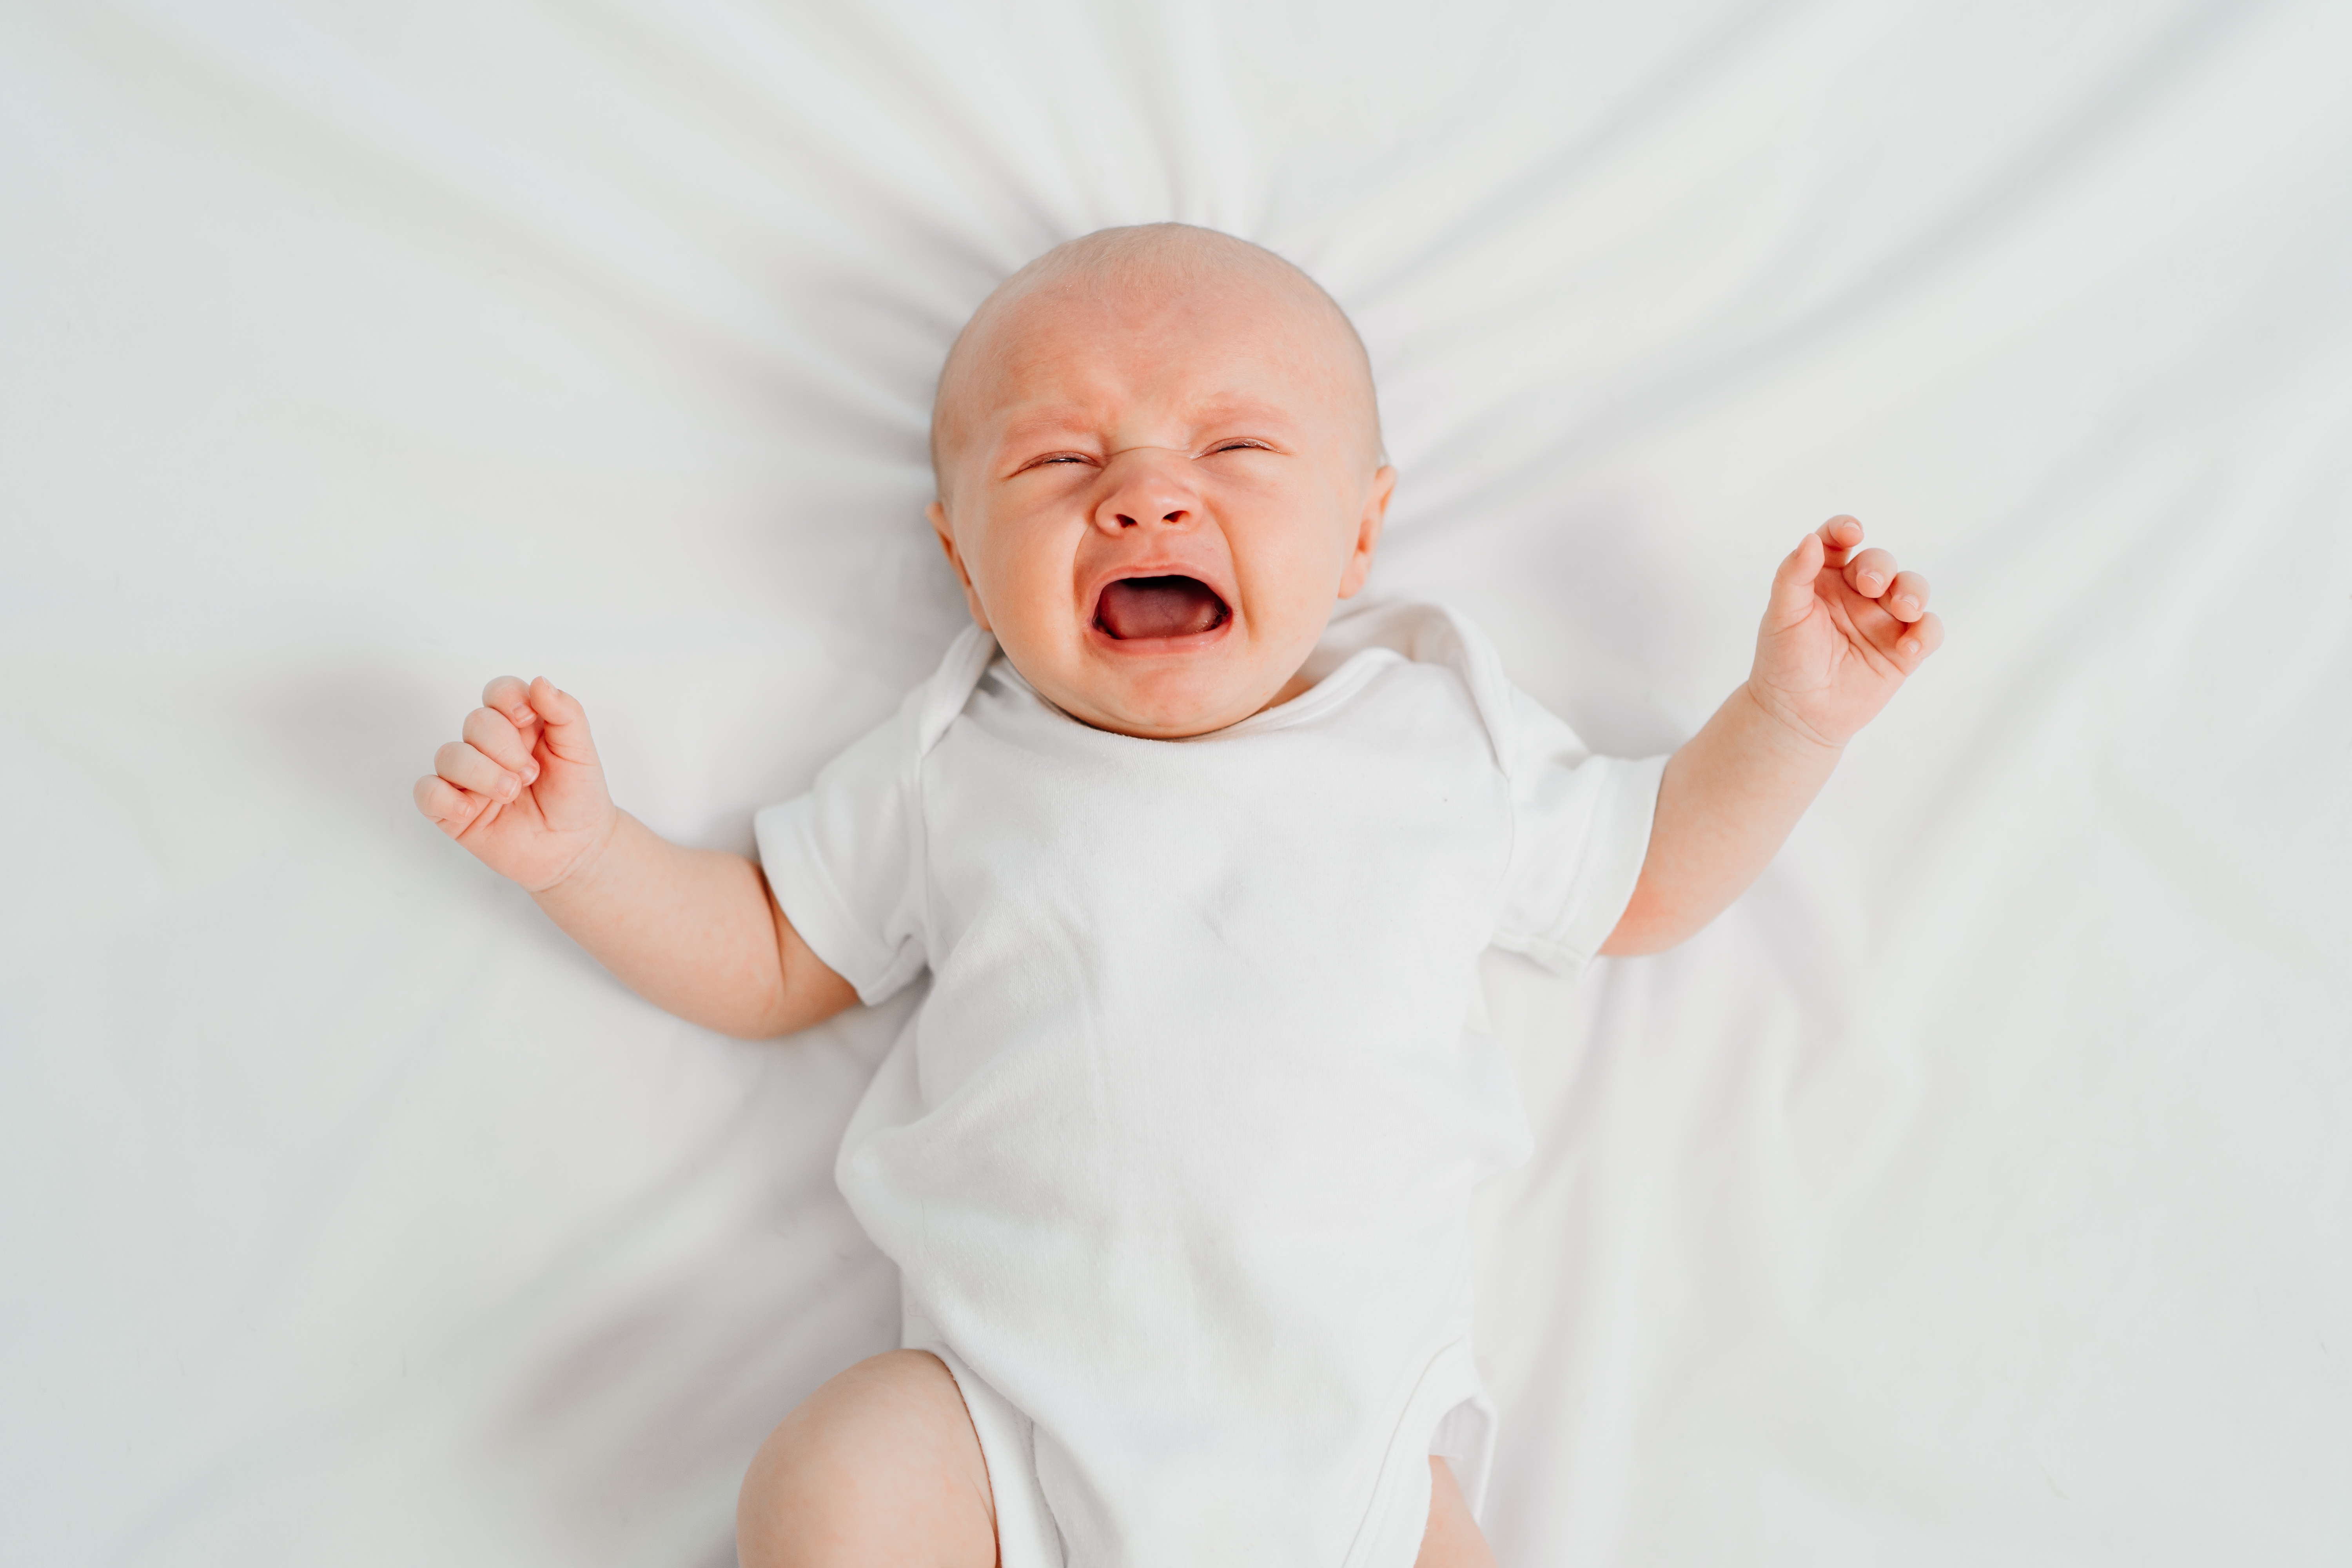 Ein weinendes Baby | Quelle: Shutterstock